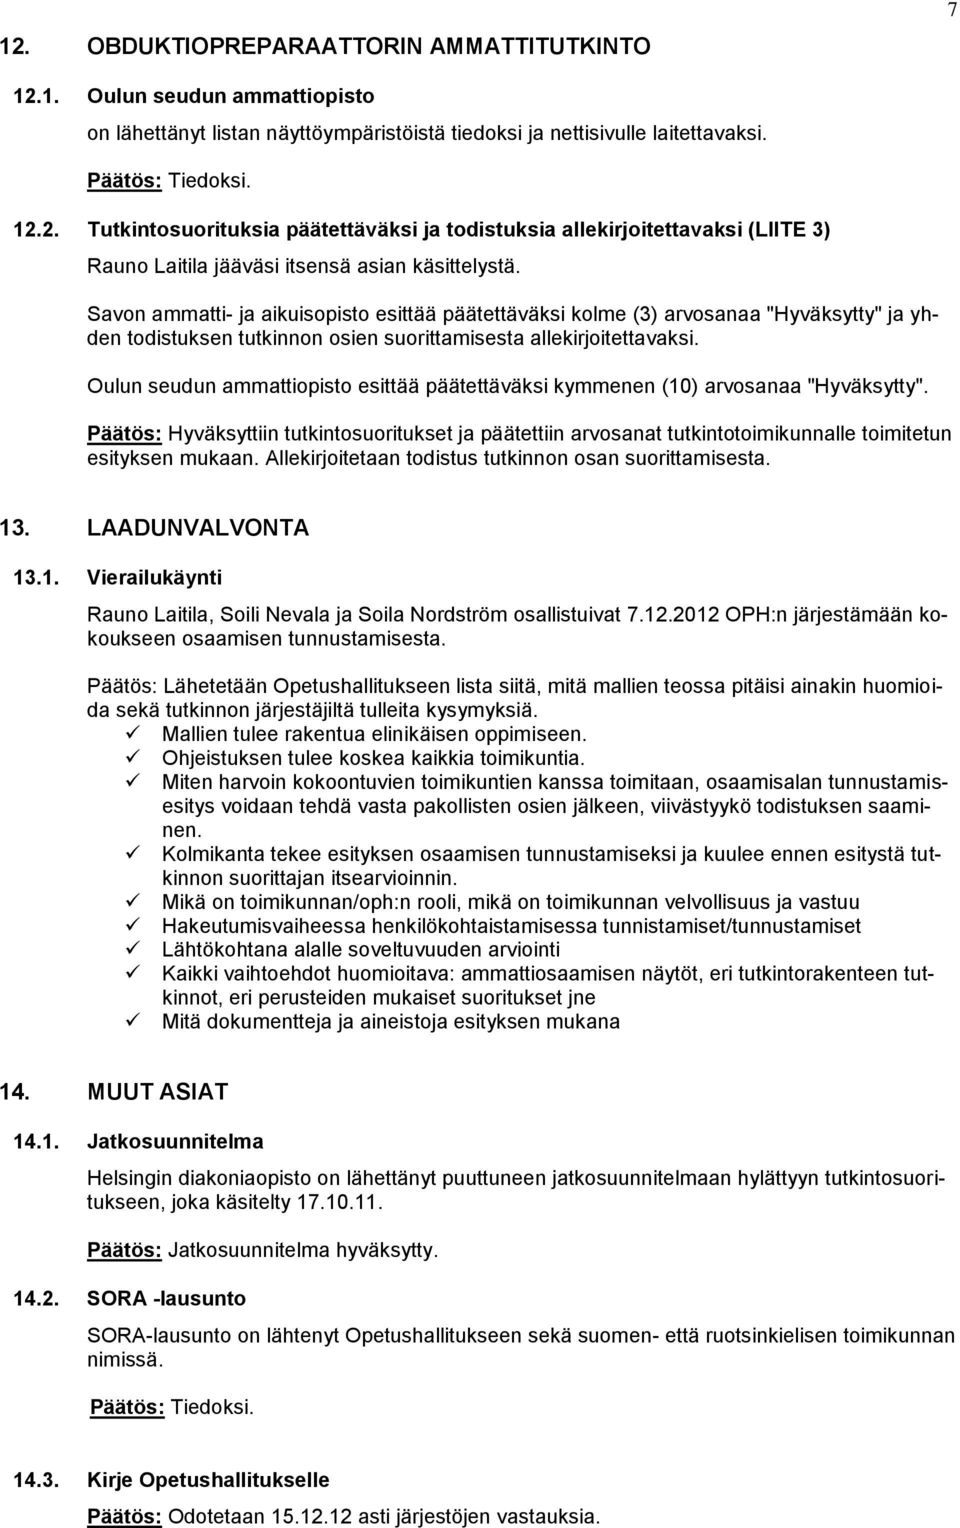 Oulun seudun ammattiopisto esittää päätettäväksi kymmenen (10) arvosanaa "Hyväksytty".